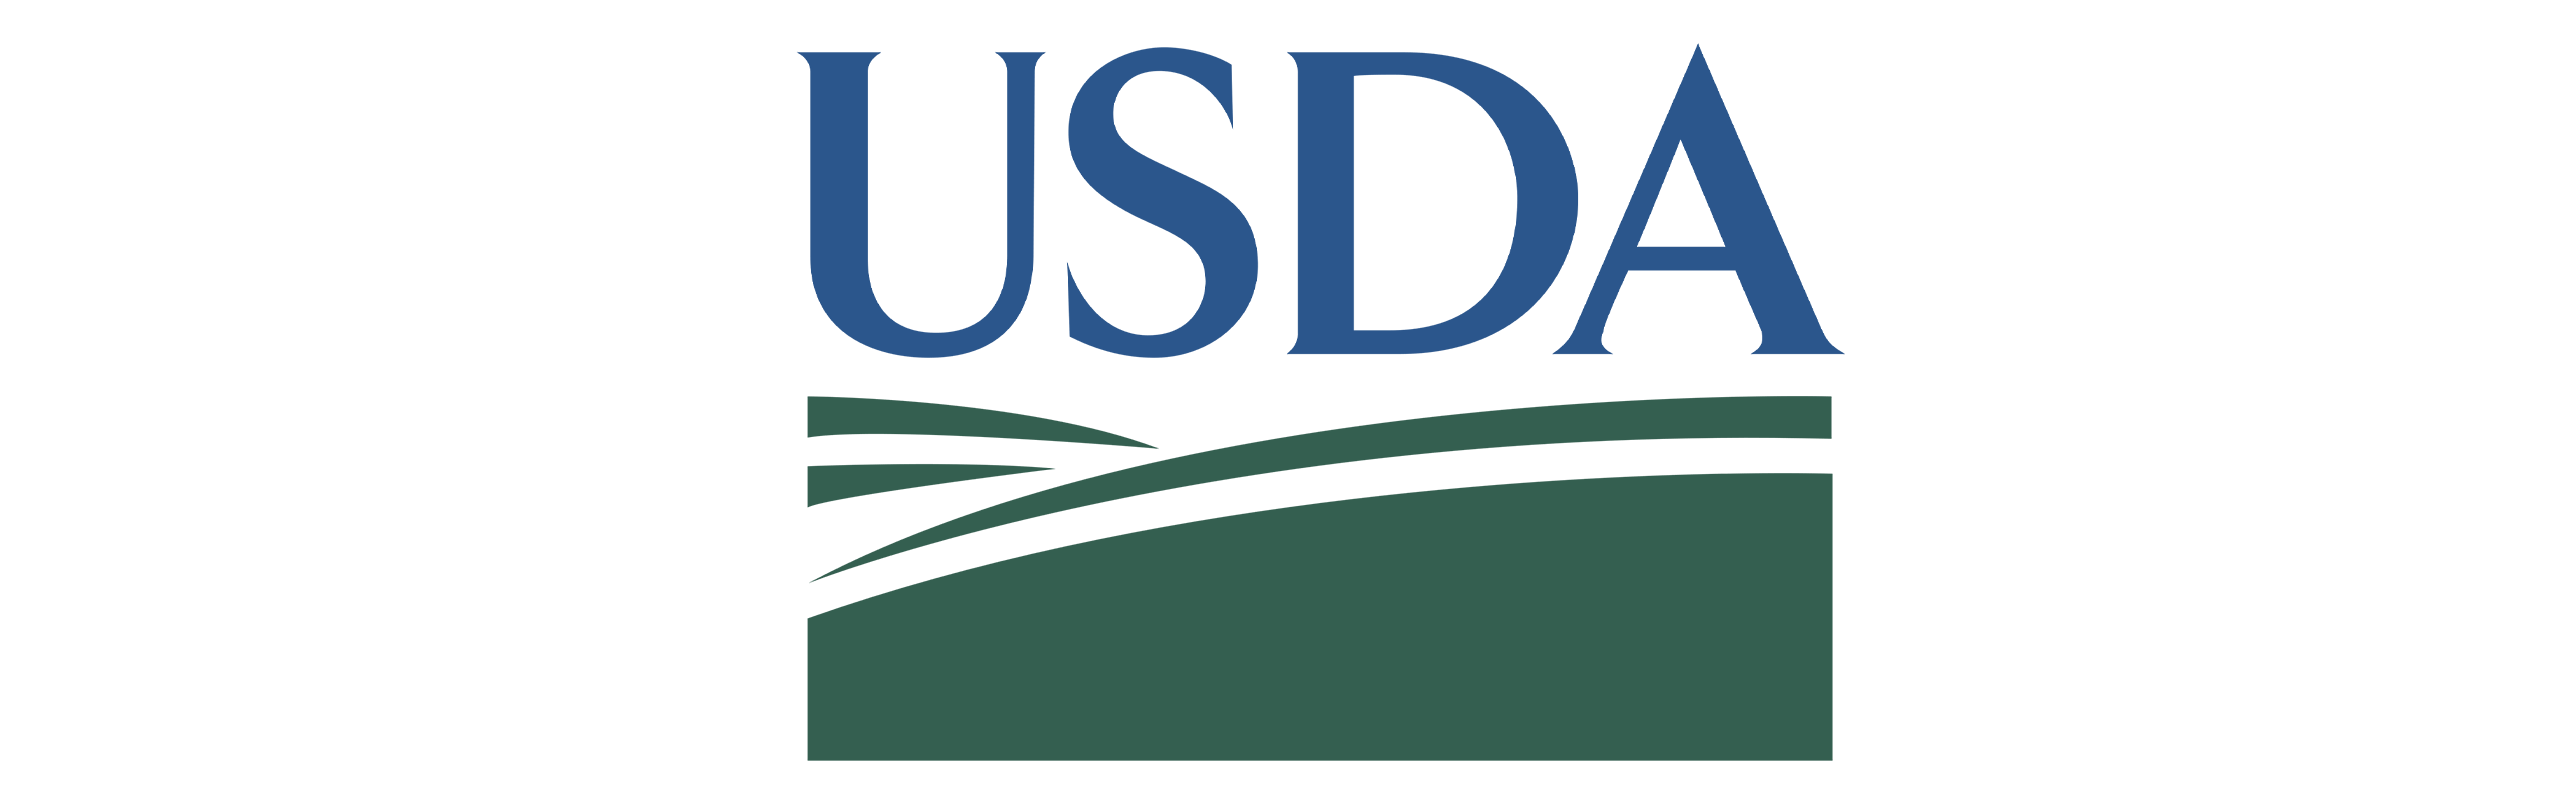 USDA1